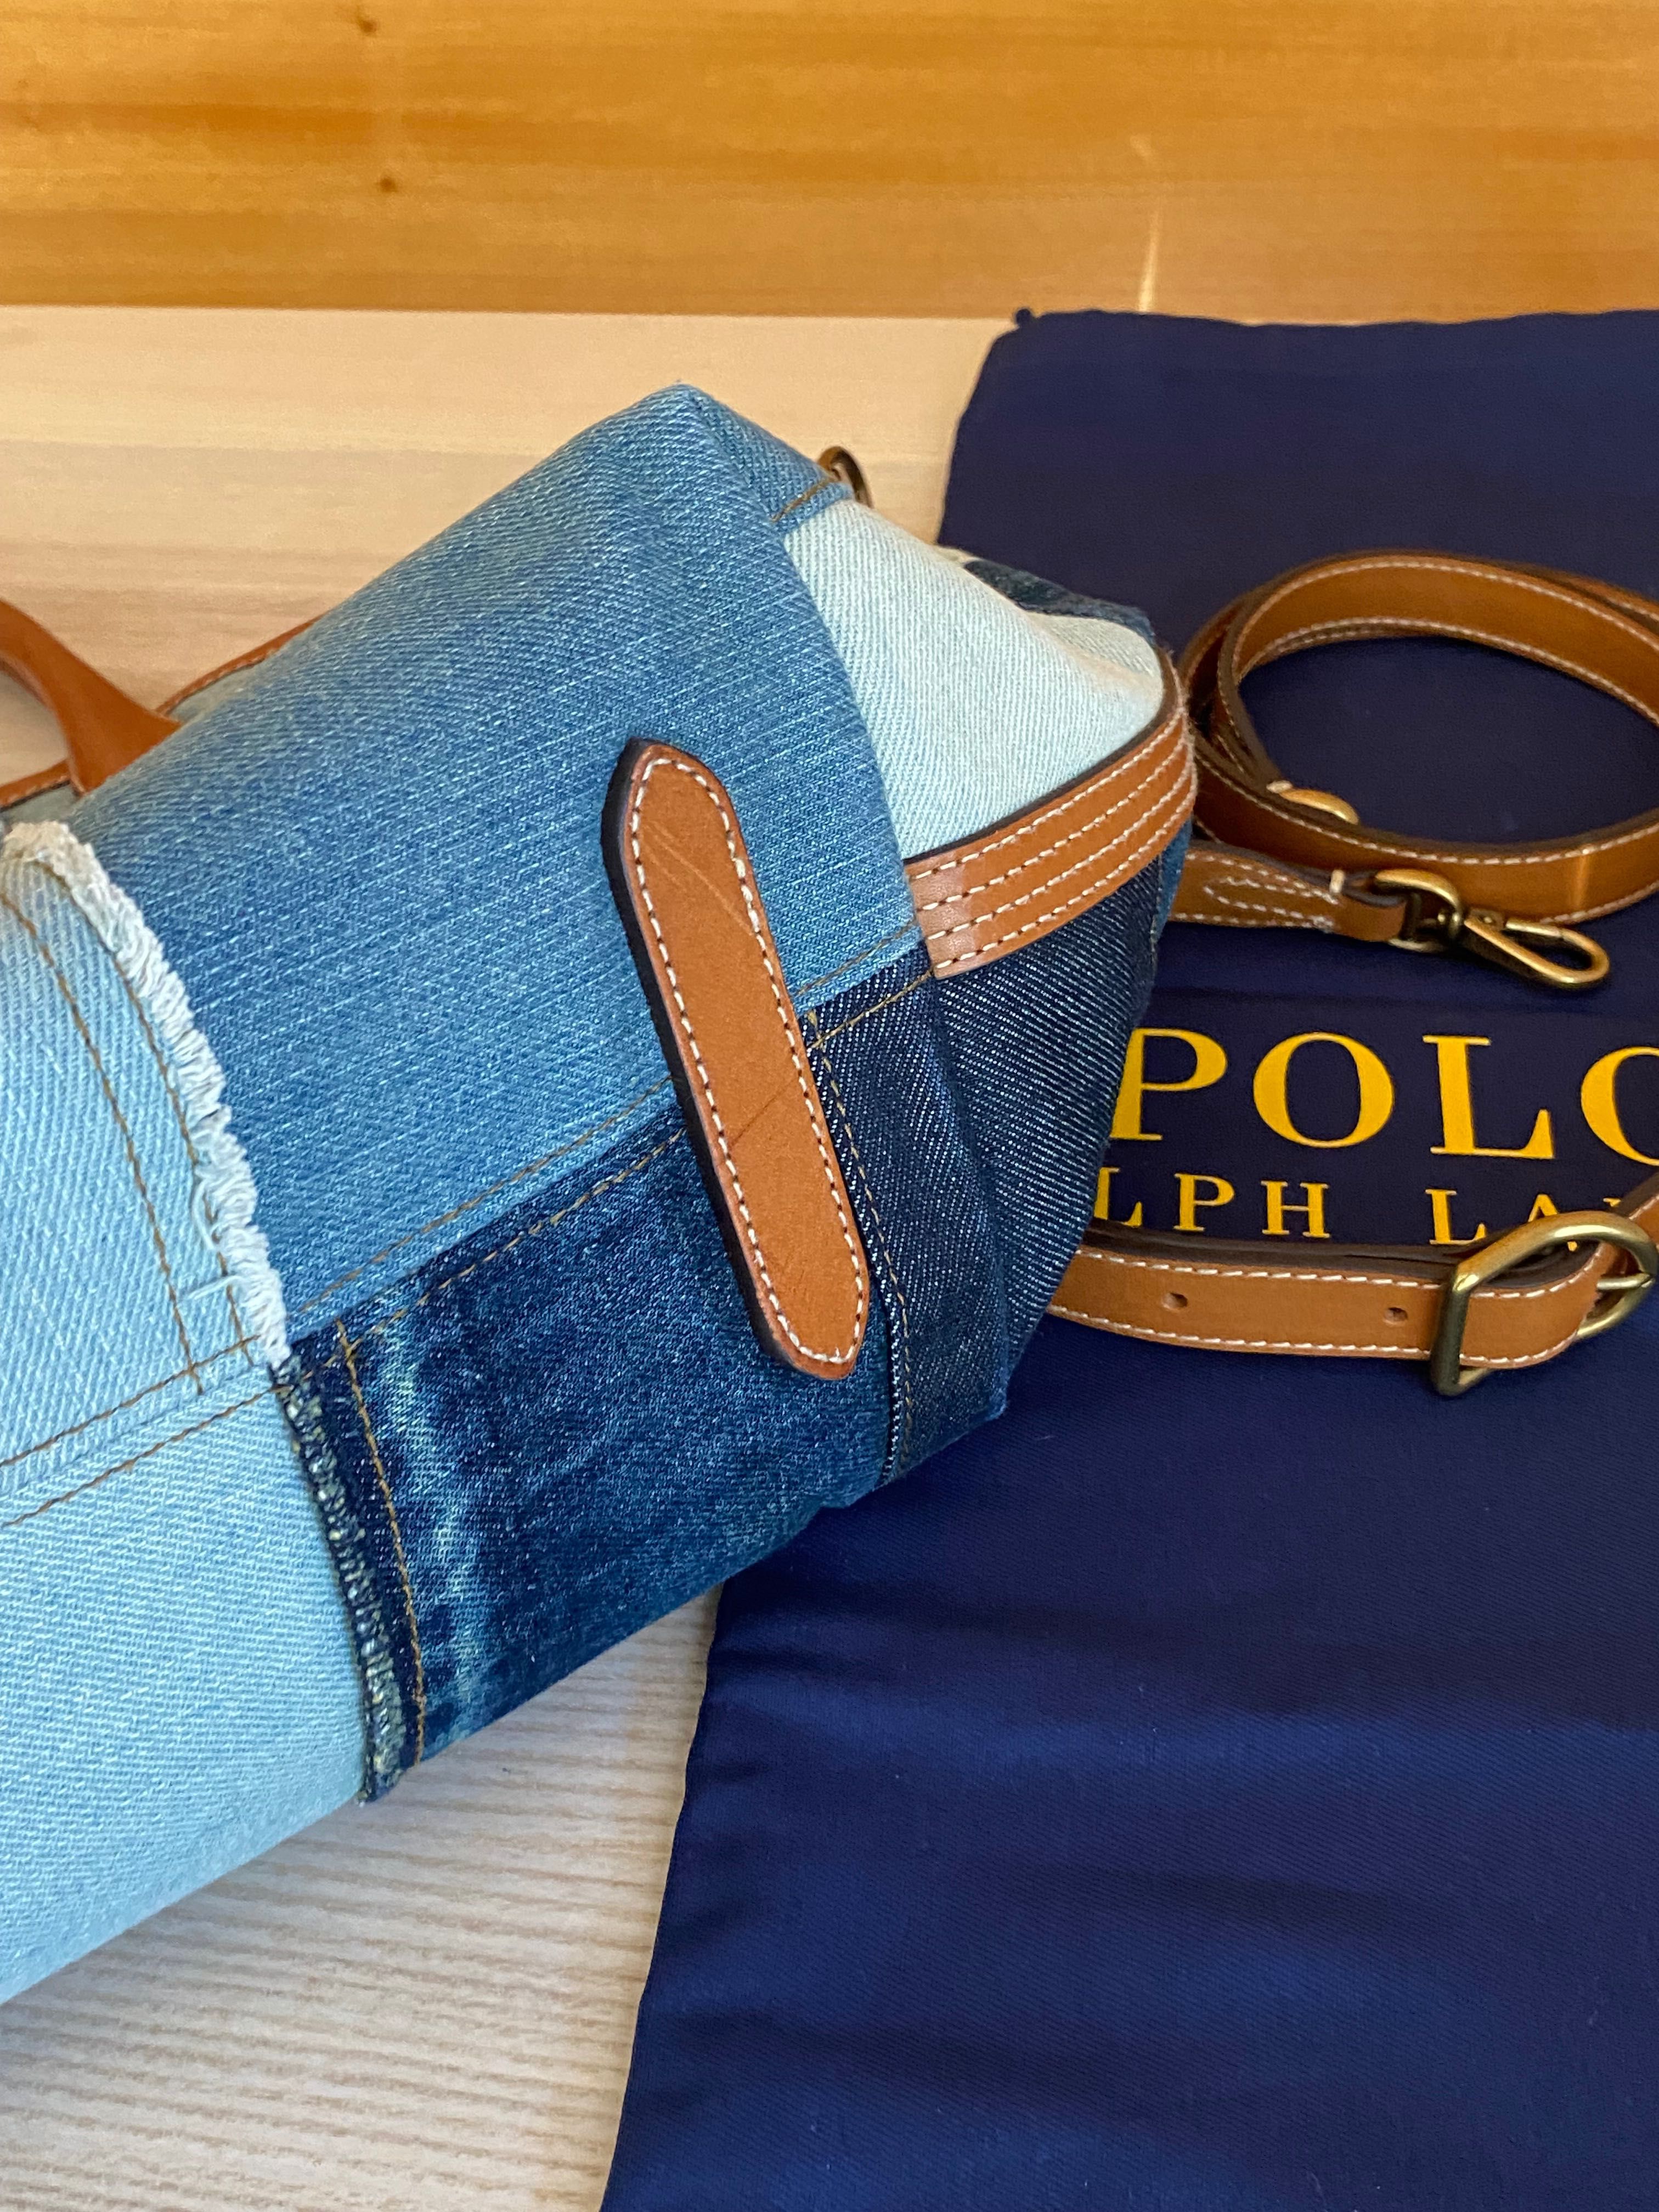 Mala Tote Polo Ralph Lauren - acompanha alça tiracolo e saco da marca